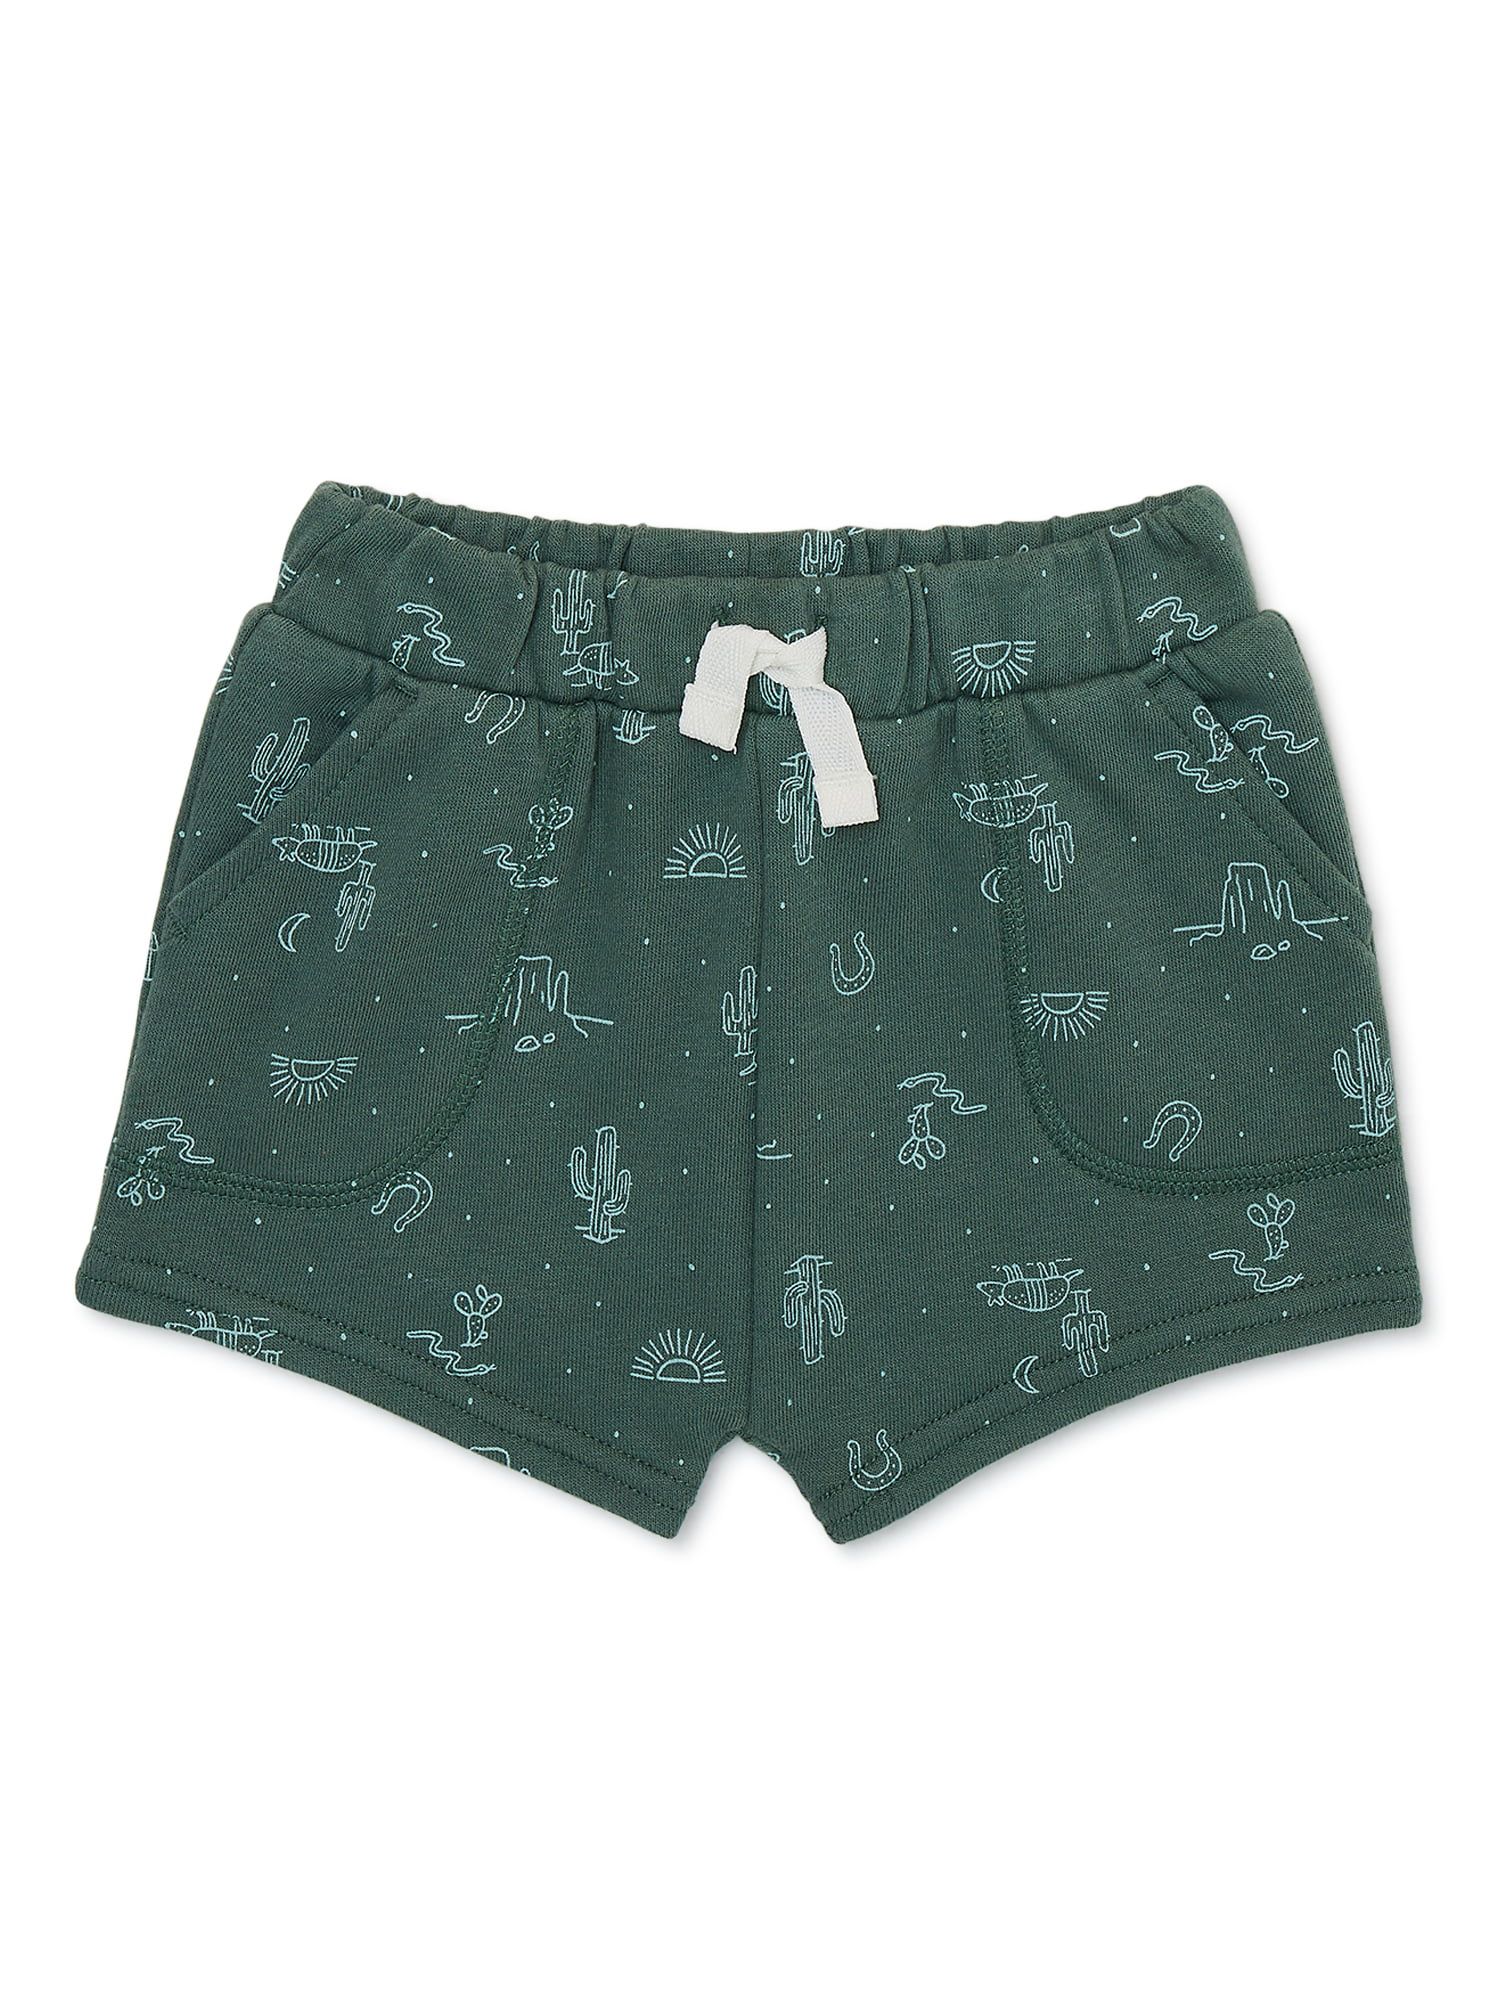 Garanimals Baby Boy French Terry Print Shorts, Sizes 0-24 Months | Walmart (US)